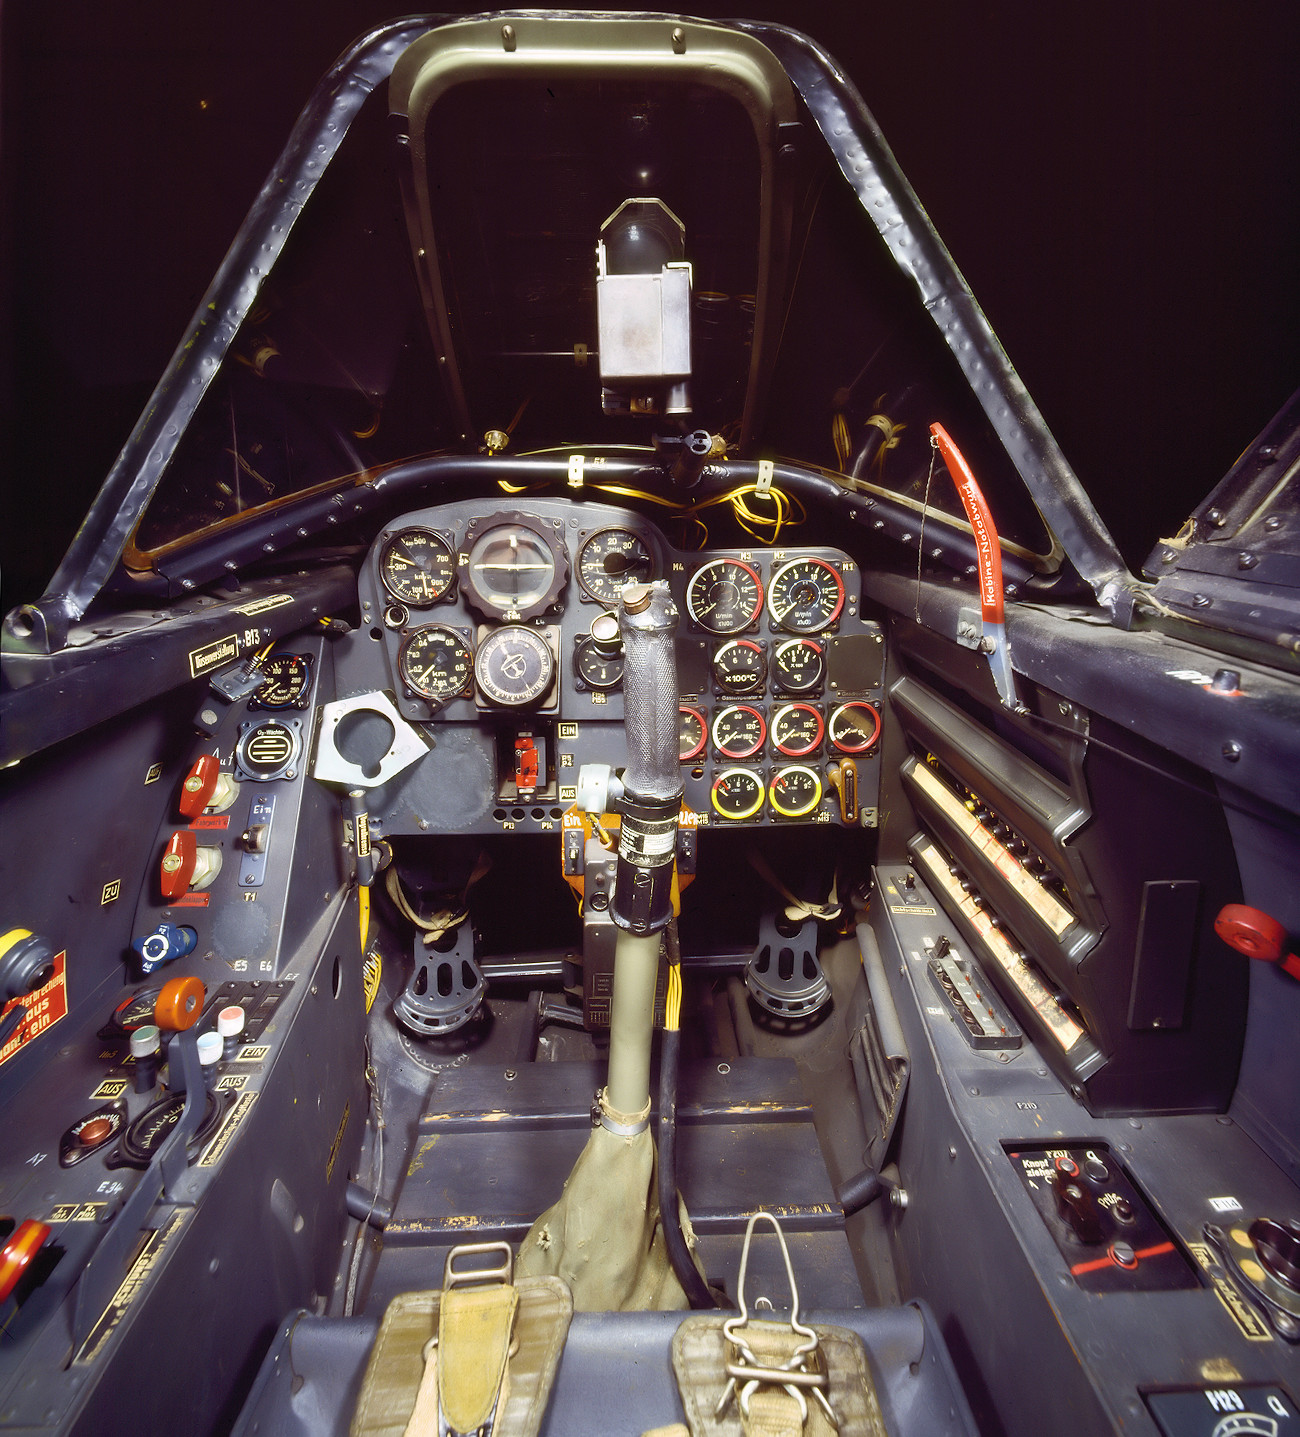 Messerschmitt Me 262 A-1a Schwalbe - Cockpit